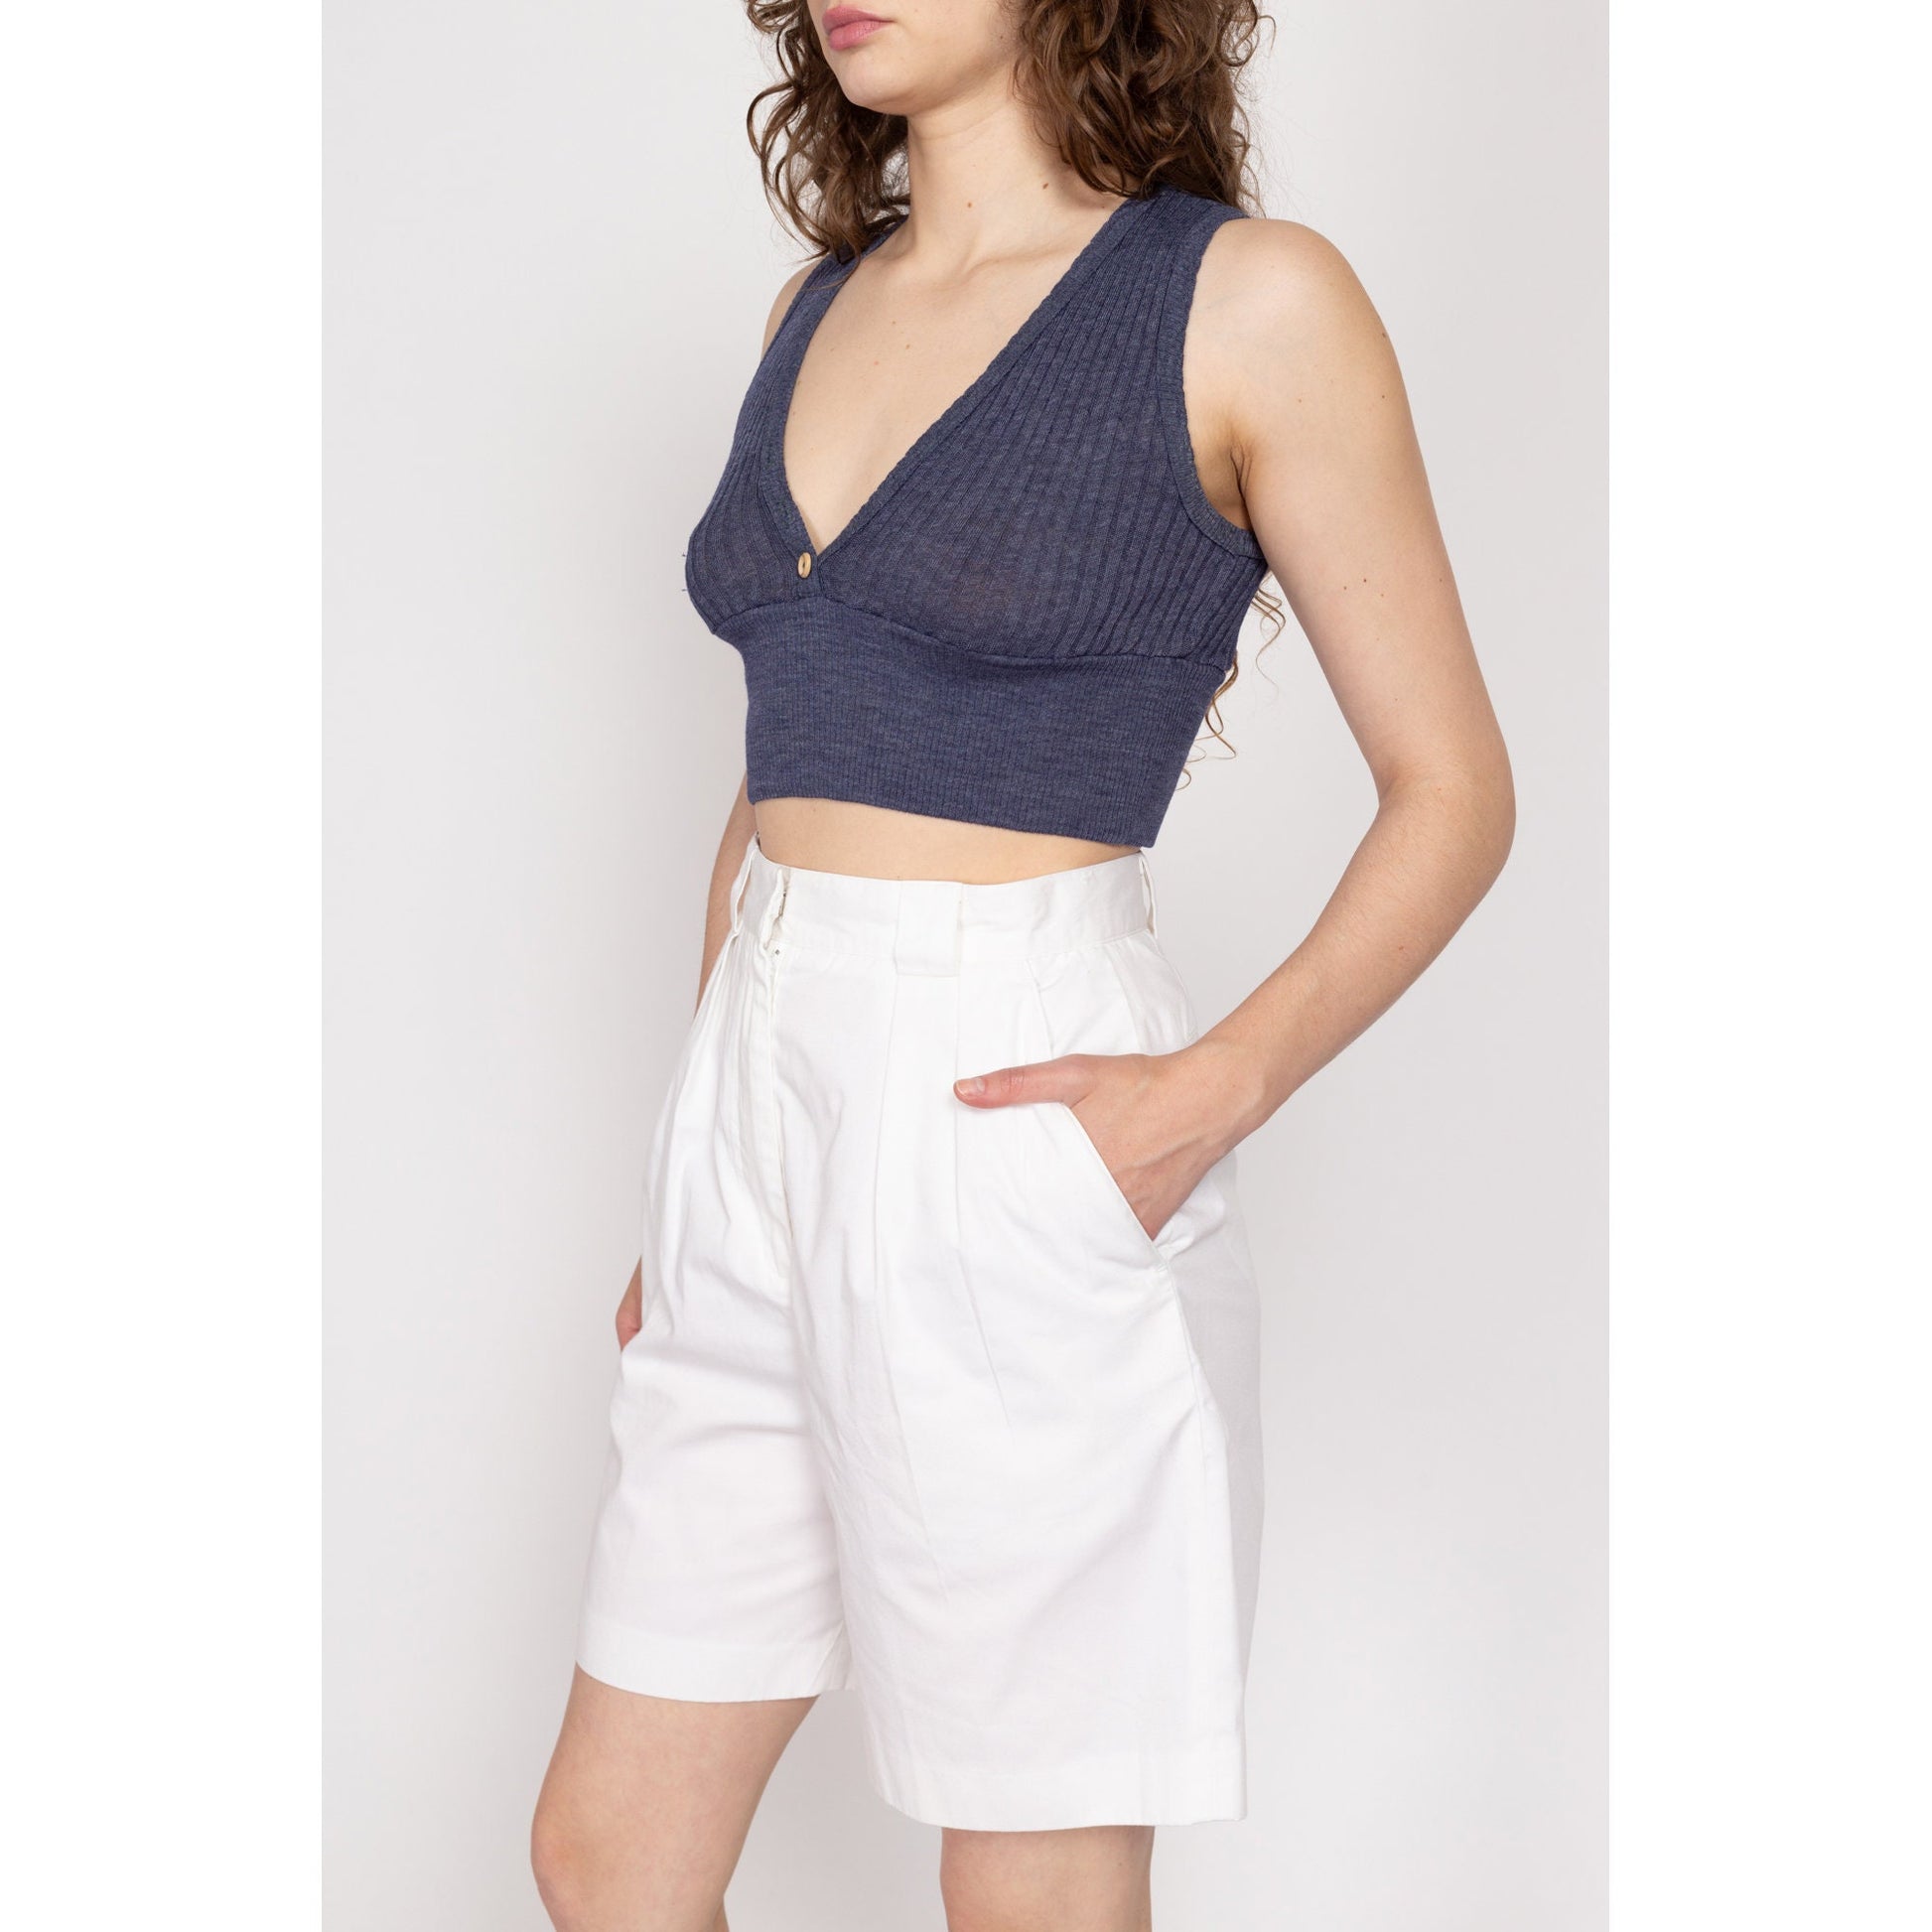 Medium 80s Izod White High Waisted Shorts 27.5" | Vintage Minimalist Pleated Mom Shorts